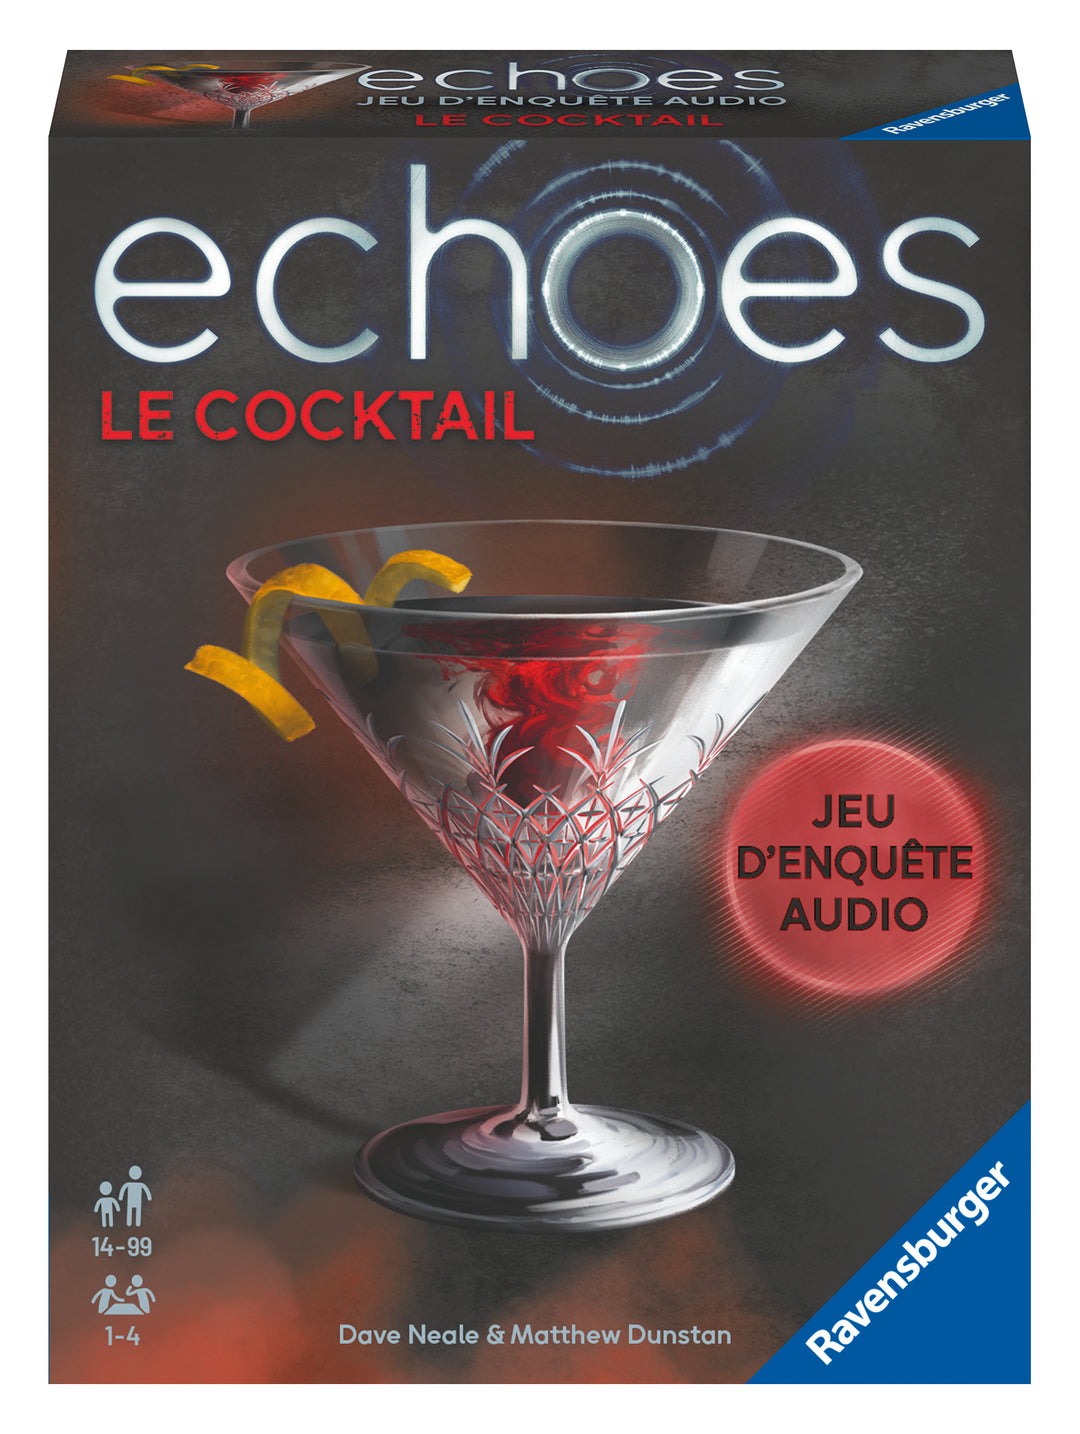 echoes: Le Cocktail (FR)